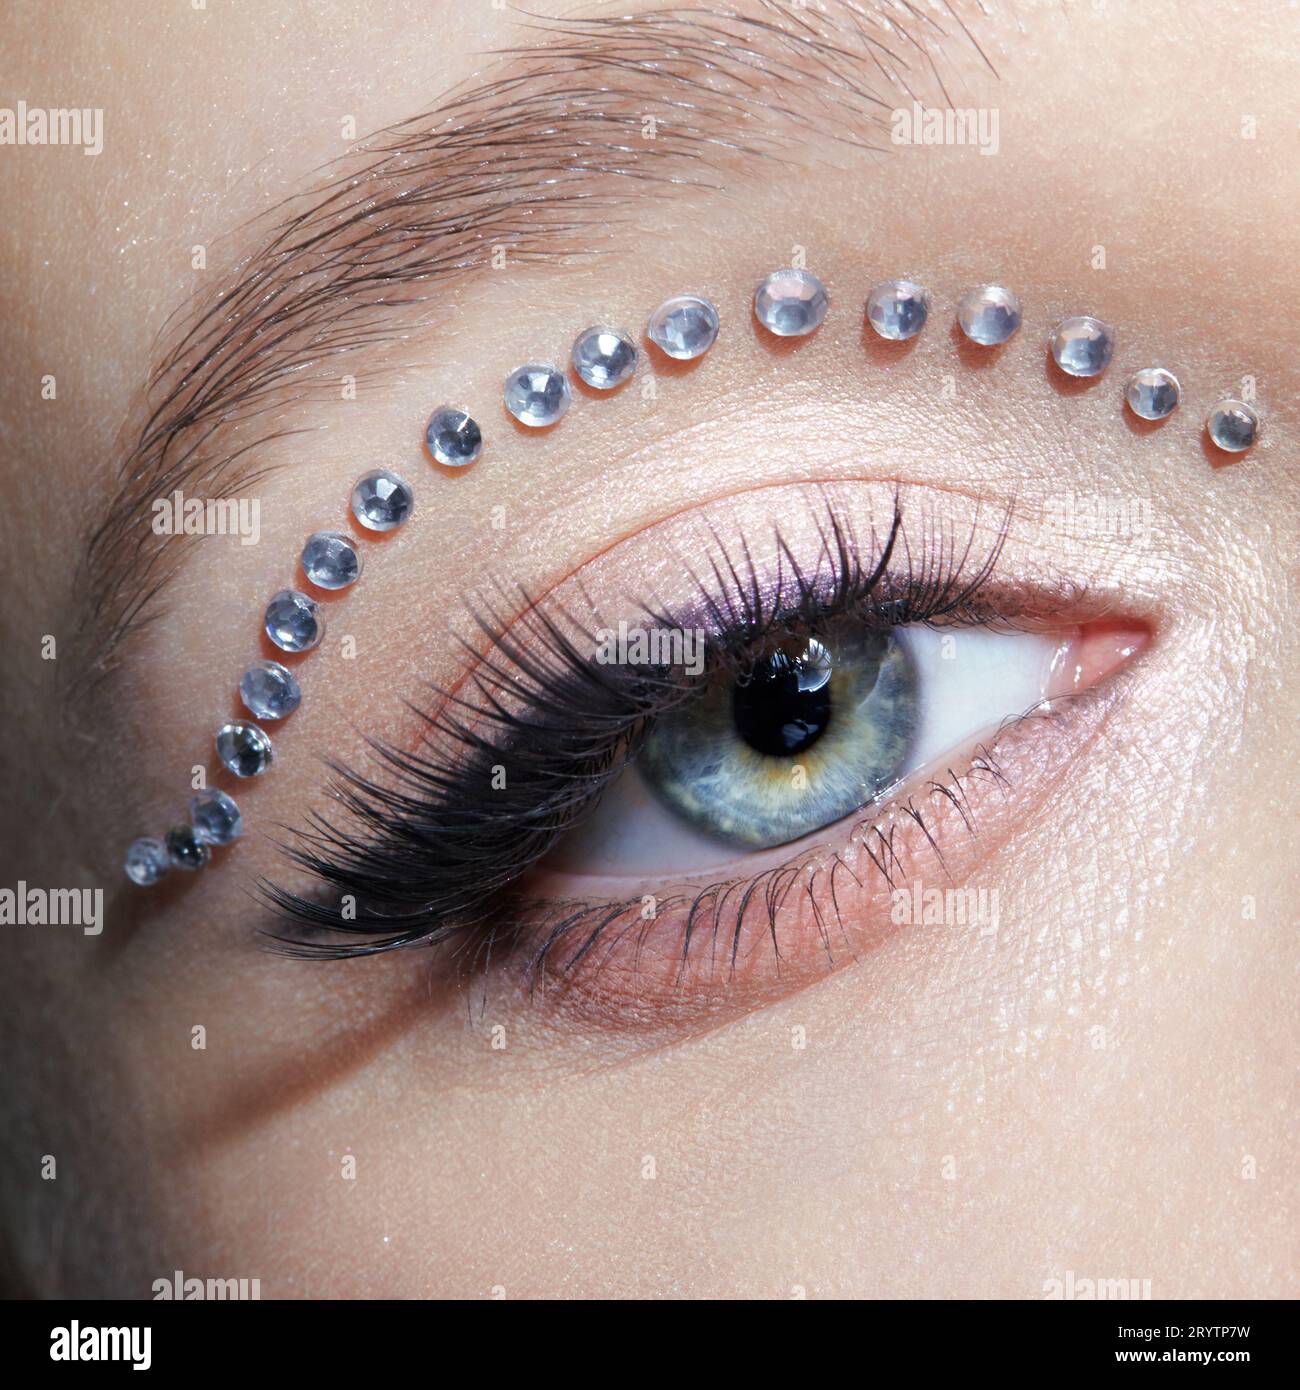 Primo piano macro shot di occhio umano femminile con trucco insolito. Donna con frecce di rhinestones sulla palpebra. Foto Stock